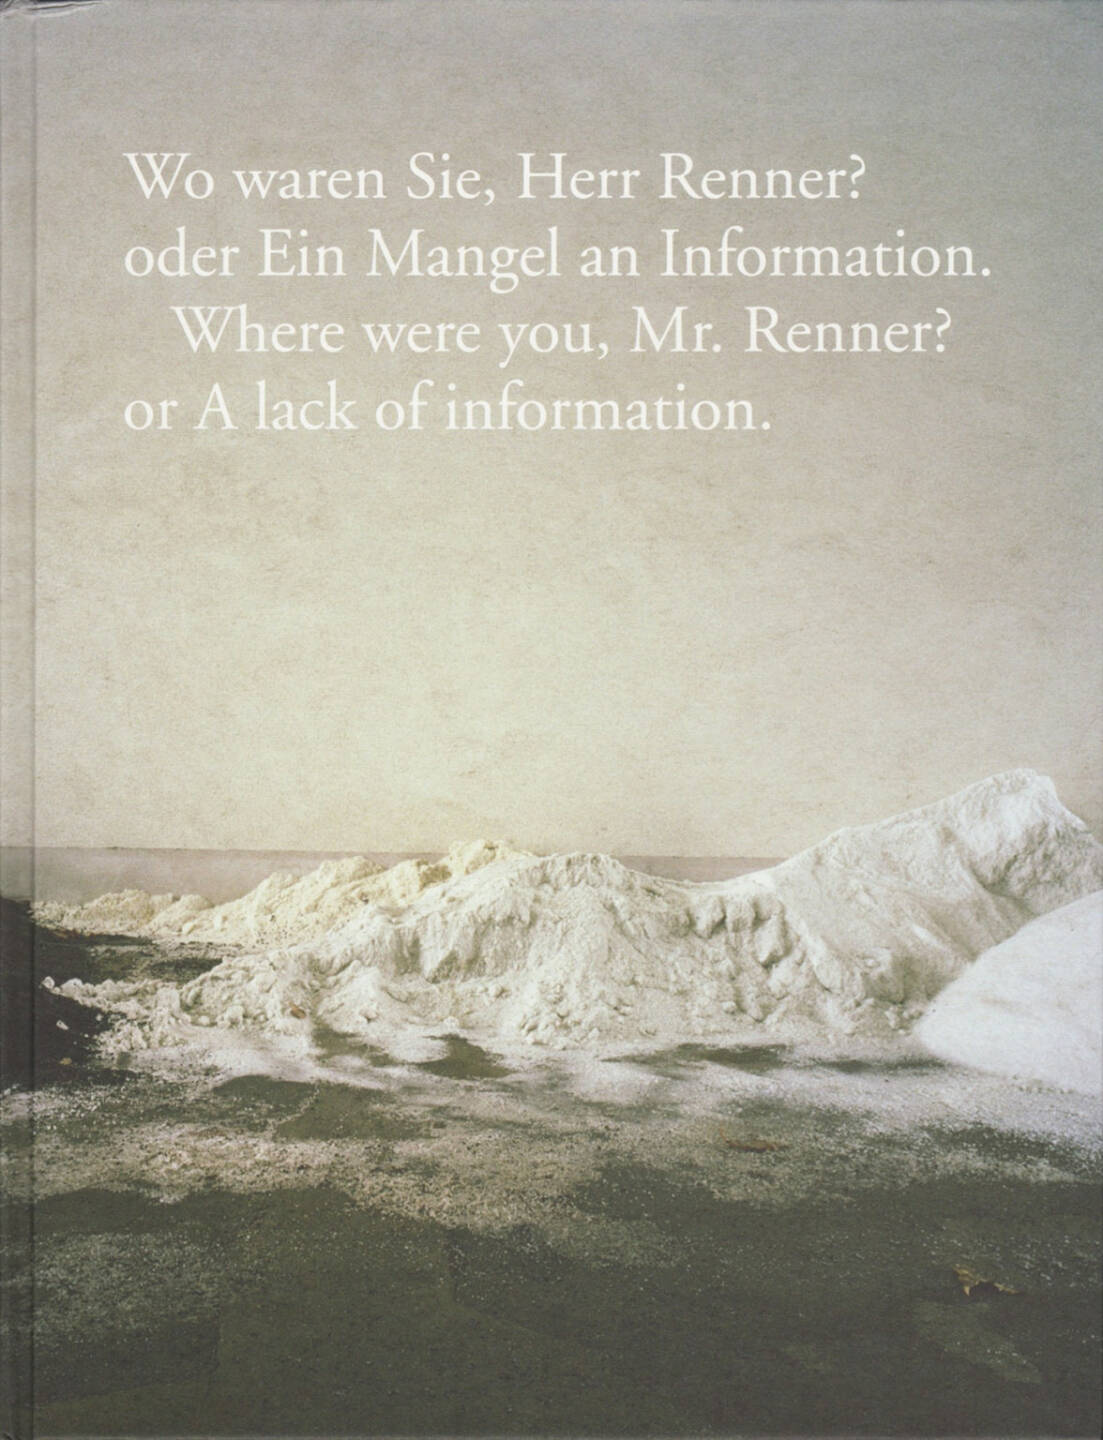 Volker Renner - Wo waren Sie, Herr Renner? oder ein Mangel an Information., Textem Verlag 2015, Cover -  http://josefchladek.com/book/volker_renner_-_wo_waren_sie_herr_renner_oder_ein_mangel_an_information